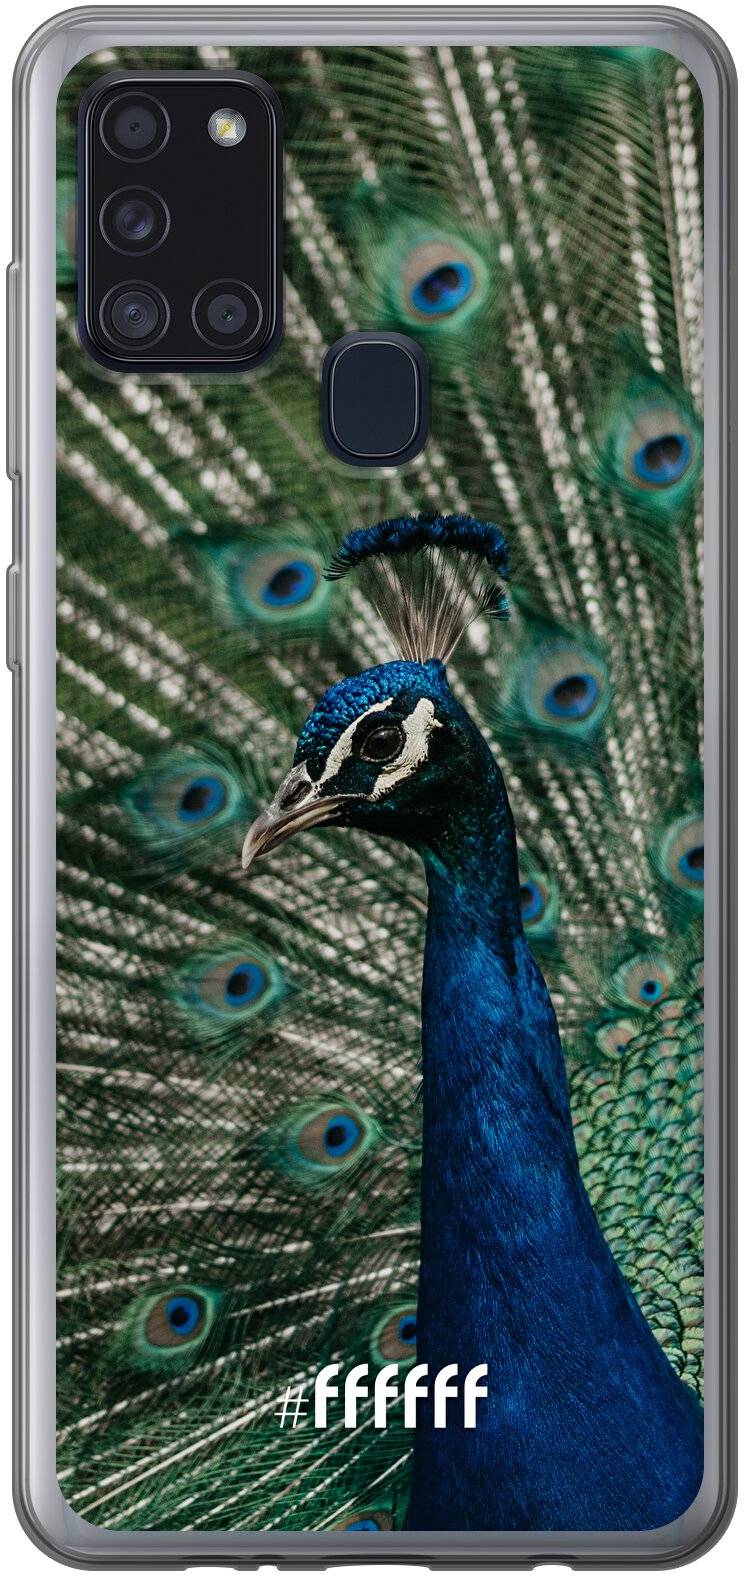 Peacock Galaxy A21s